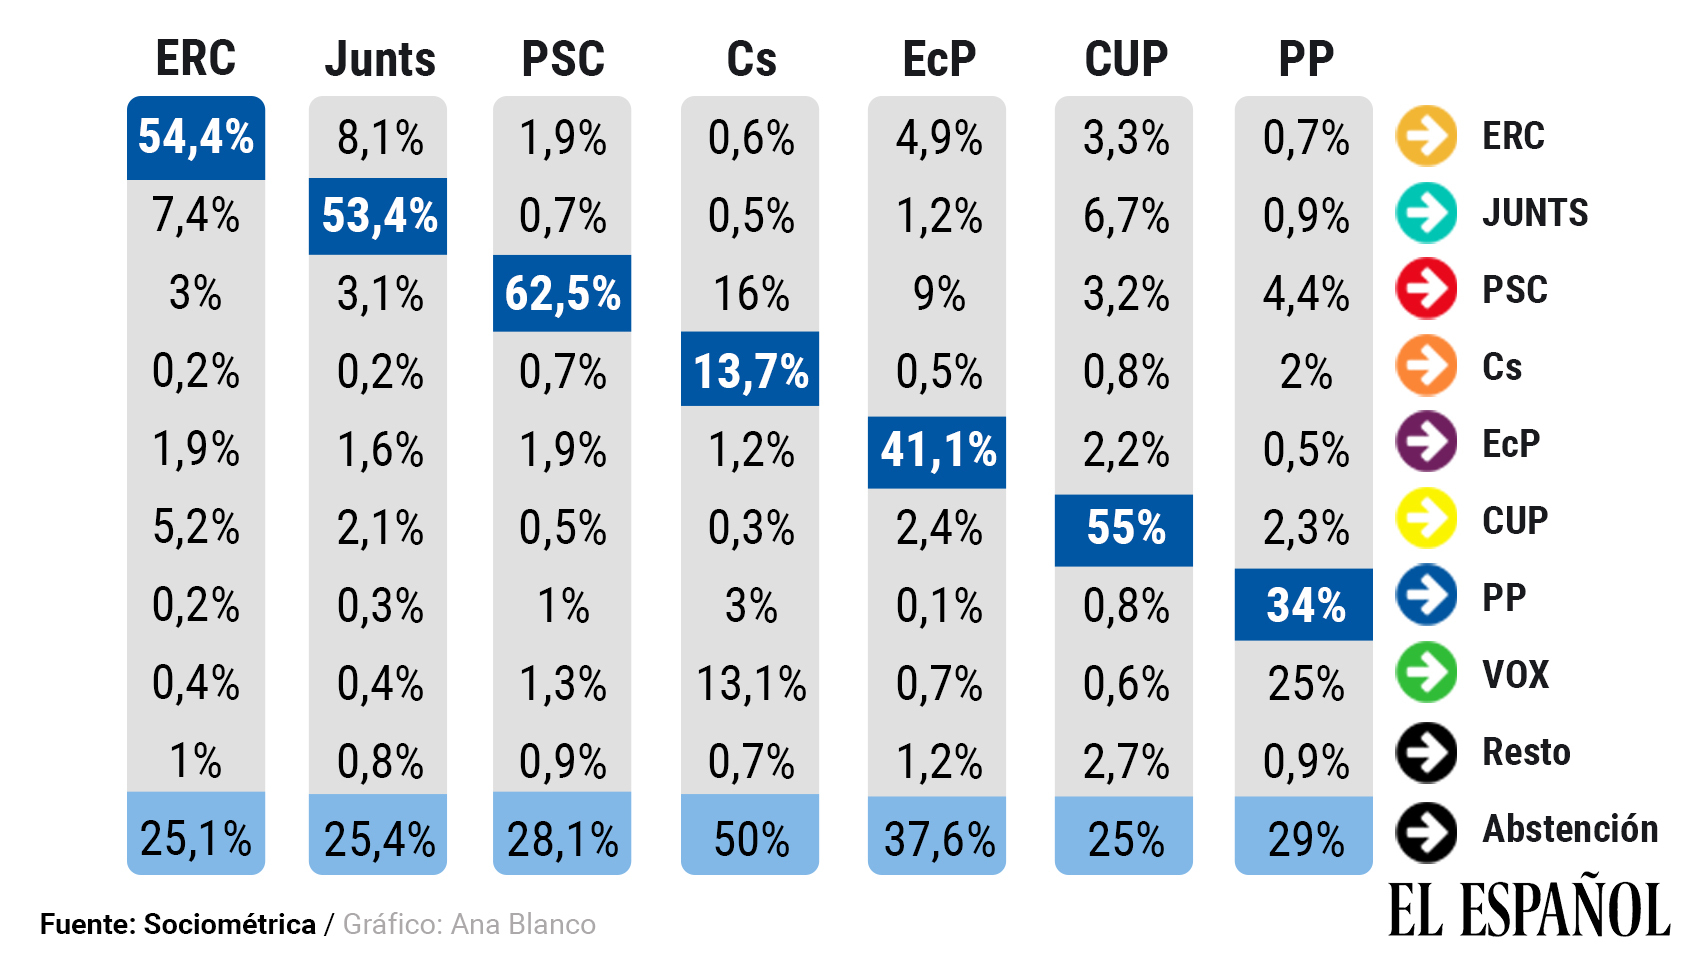 Matriz de transferencia en porcentaje de votos.